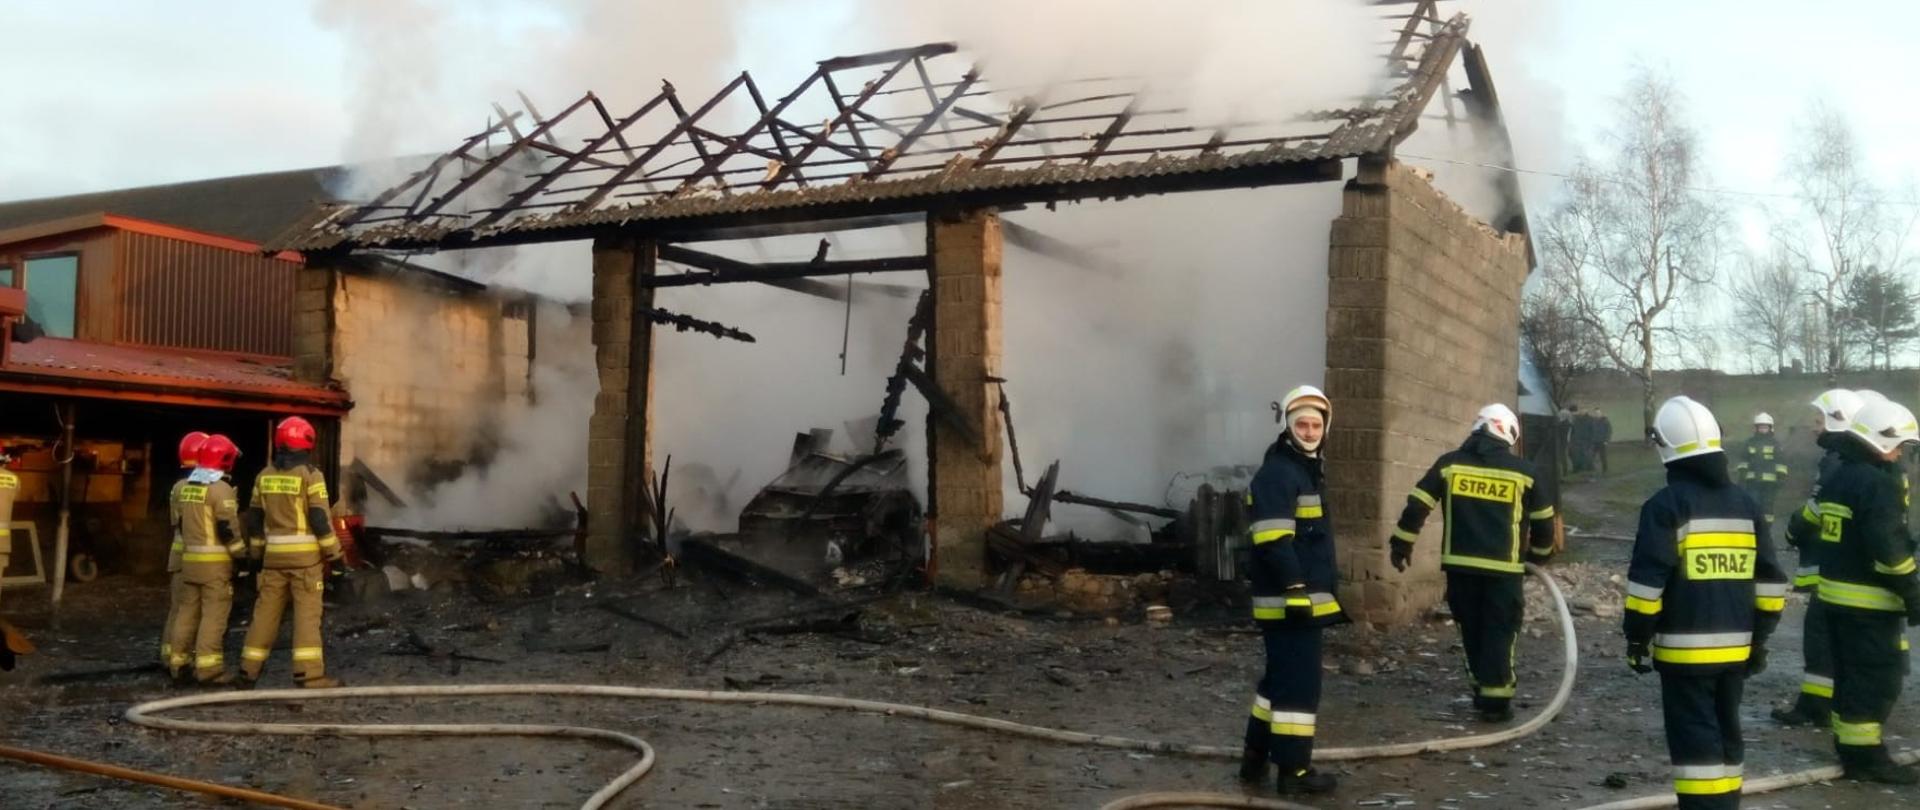 Zdjęcie przedstawia ruiny spalonej stodoły. Z lewej strony widać zabudowania gospodarcze, które udało się uratować. Na podwórzu stoją strażacy, a na ziemi leżą rozciągnięte węże strażackie. 